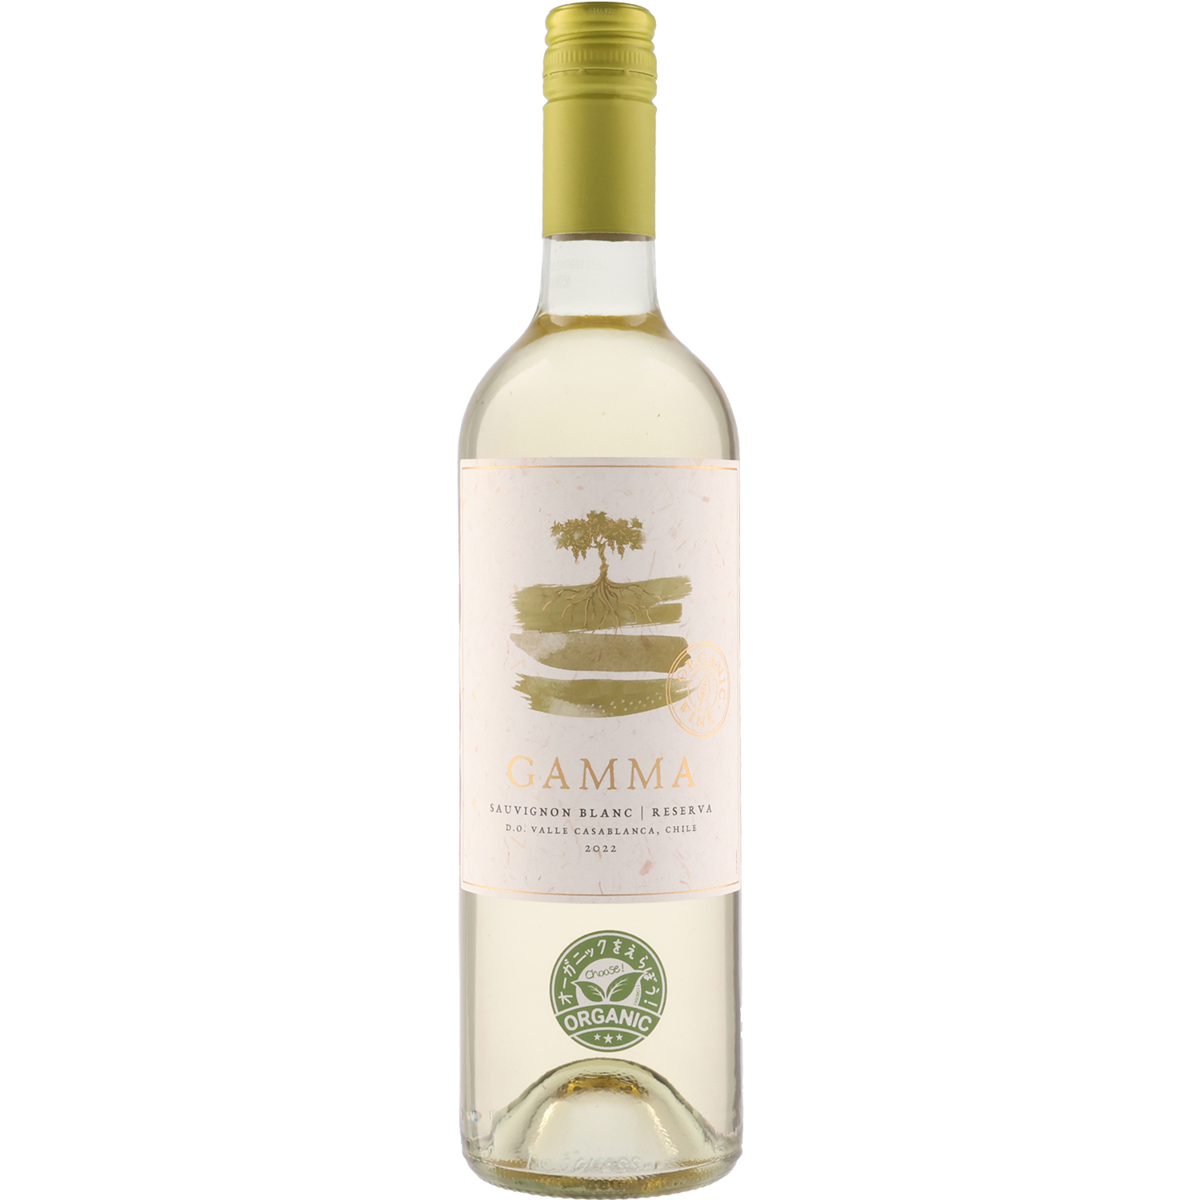 Gamma Organic Sauvignon Blanc Reserva